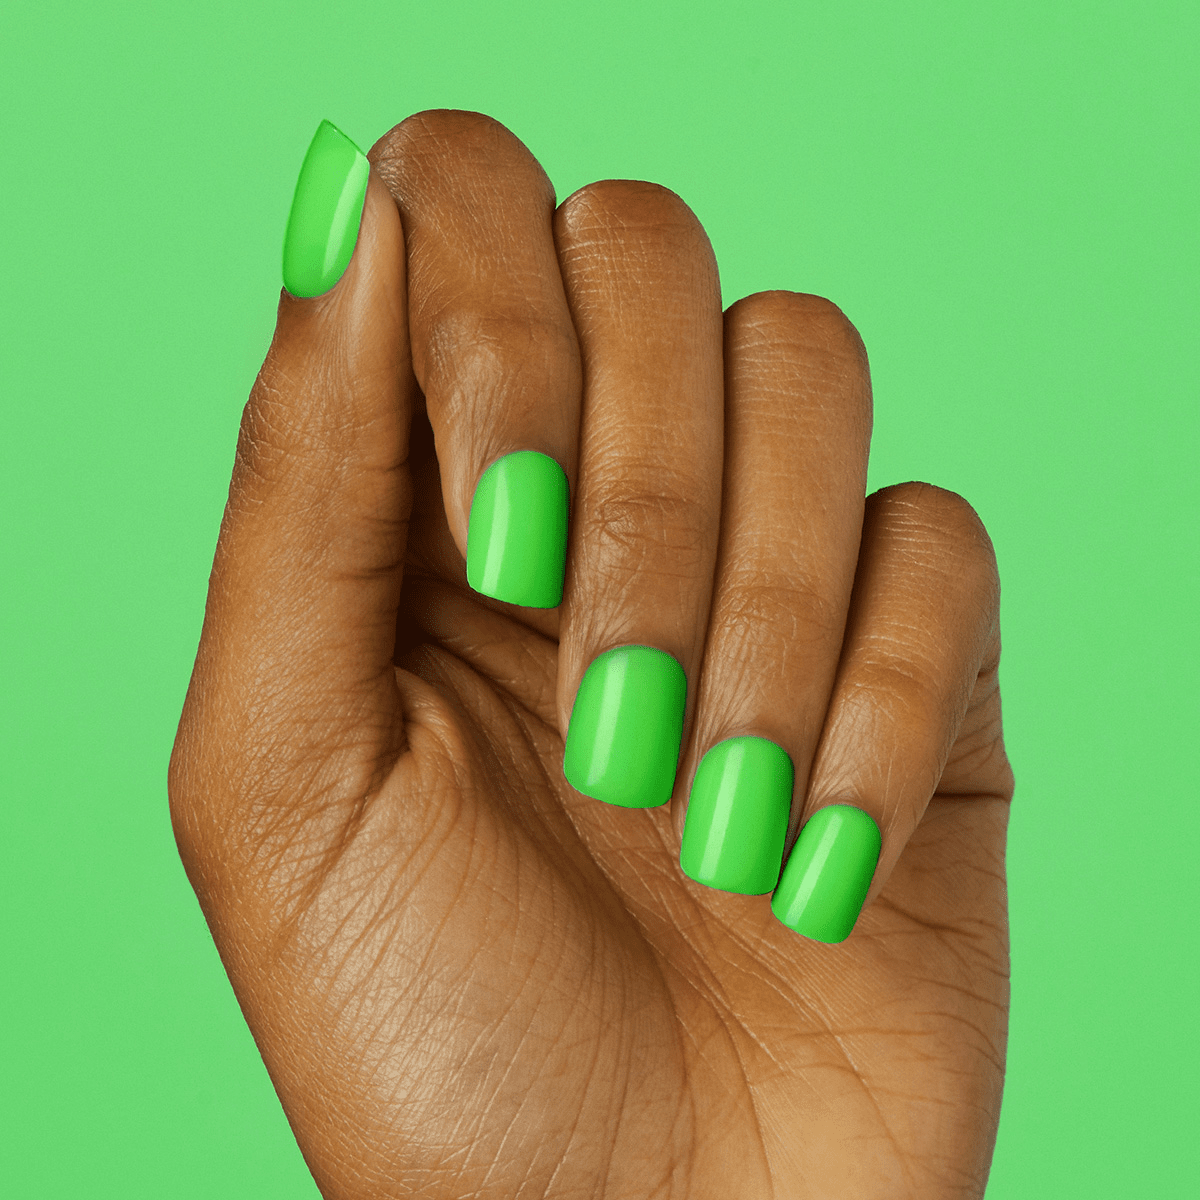 7 Best Nail Polish Colors for Dark Skin | Nail Shapes | Green acrylic nails,  Neon green nails, Green nails